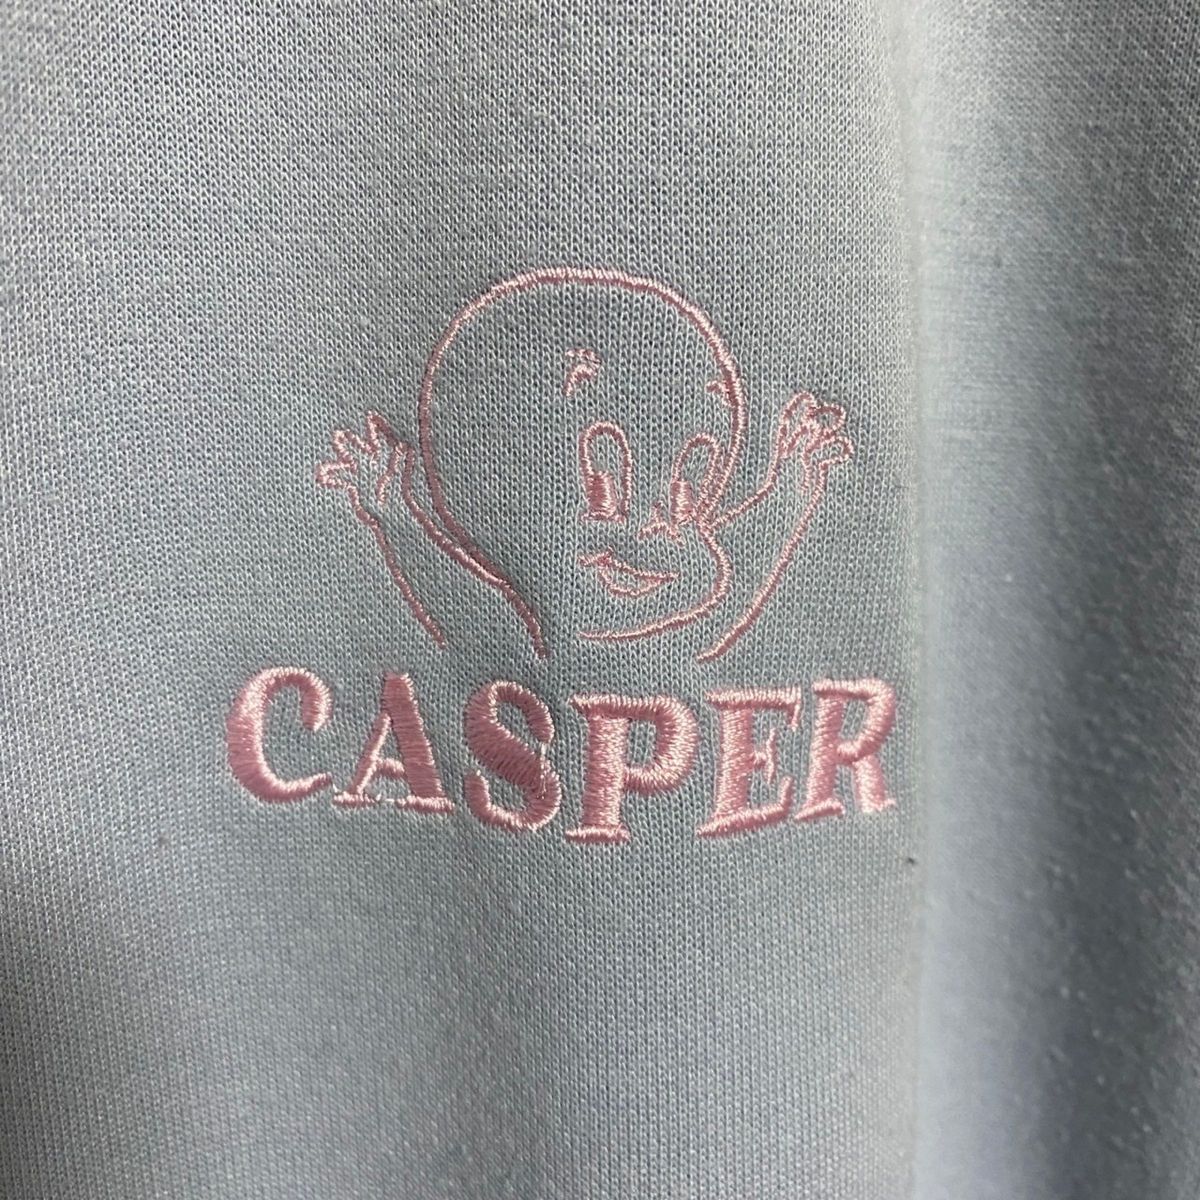 キャスパー 刺繍 トレーナー スウェット メンズLサイズ 淡水色